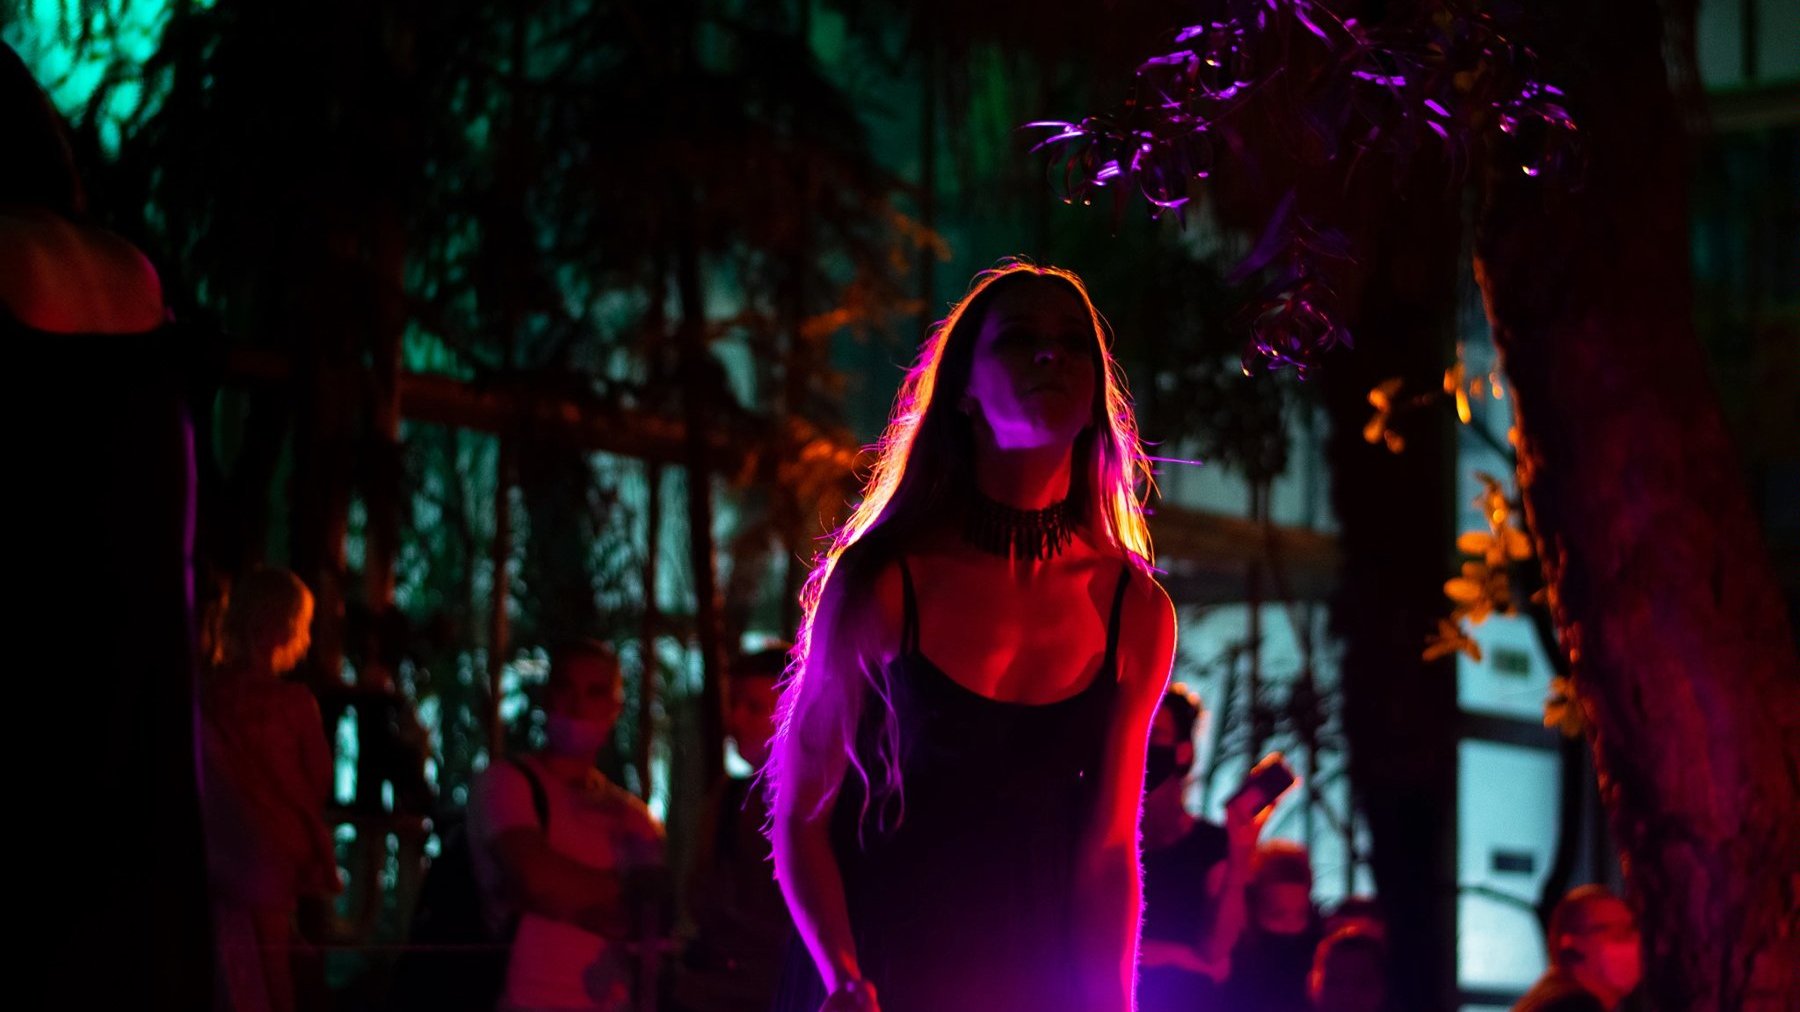 Młoda kobieta w czarnej sukience i w długich włosach jest oświetlona od dołu przez kolorowe neony. Nie widać jej twarzy, która jest skierowana w górę. Za kobietą kilka sylwetek innych gości.